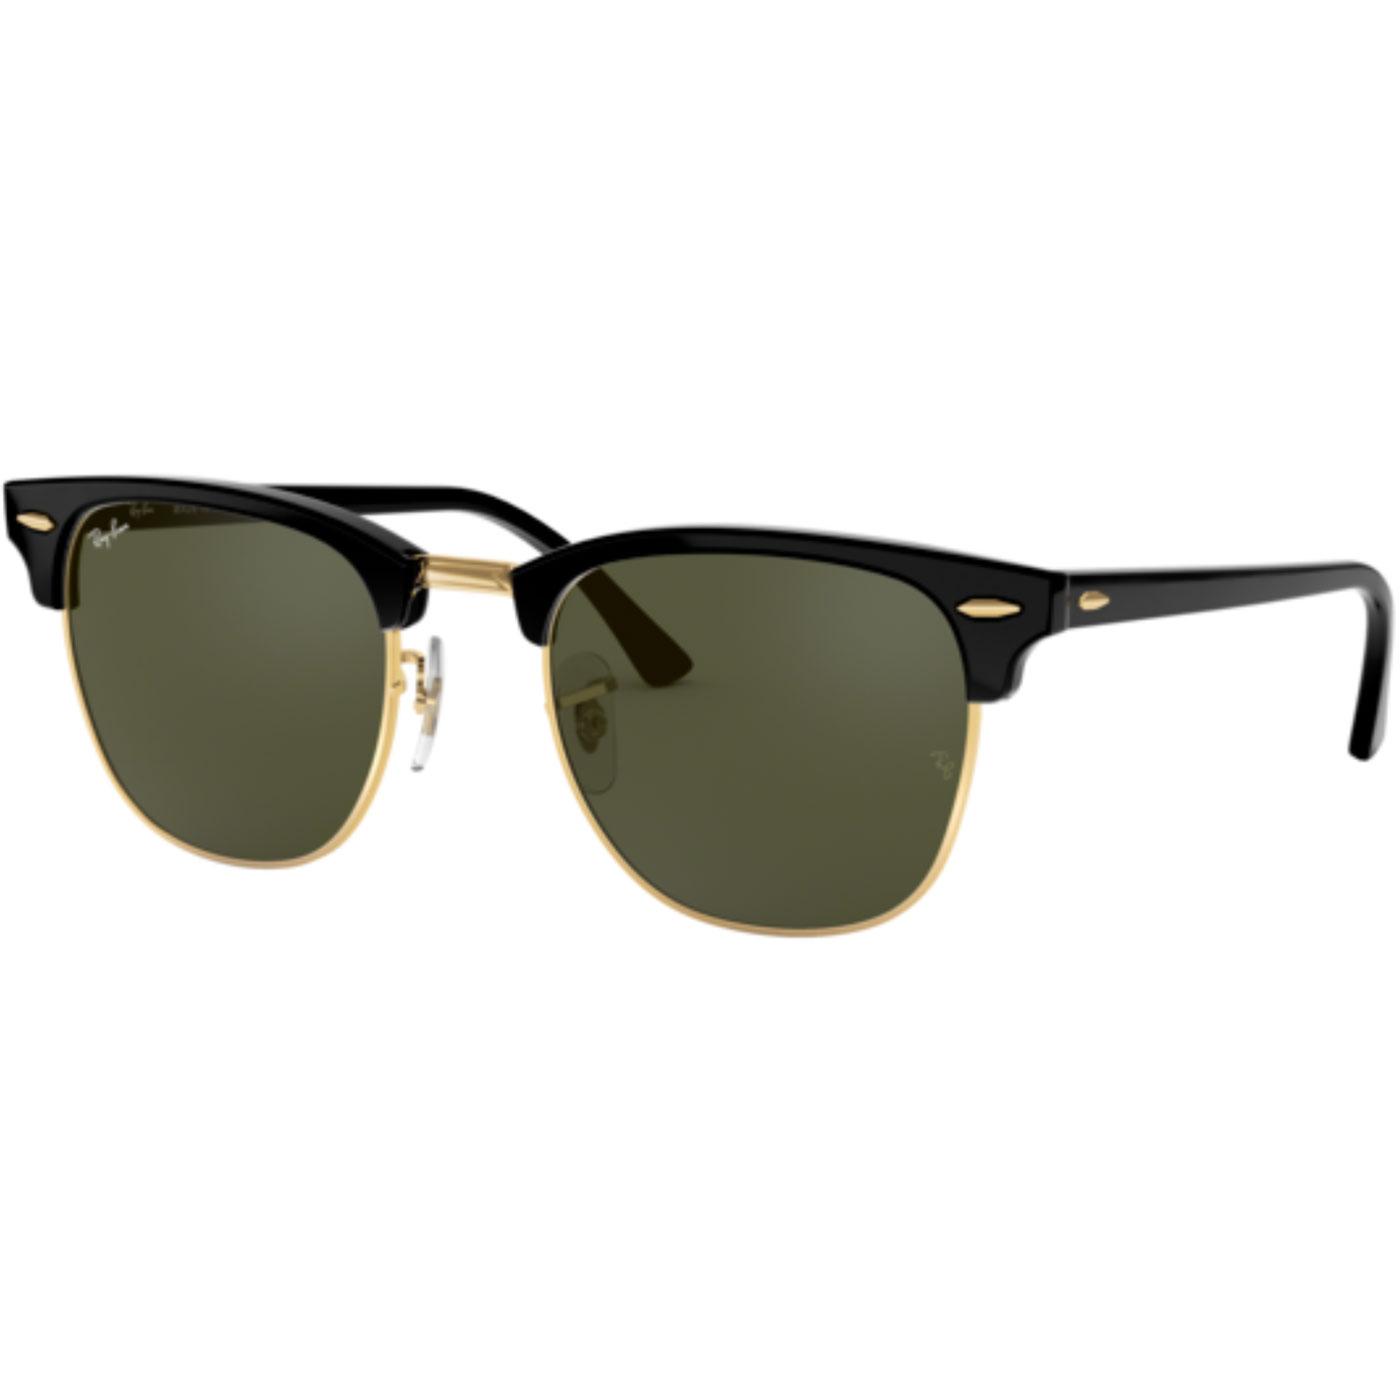 Ray-Ban Clubmaster Retro 50s Mod Icon Sunglasses in Black